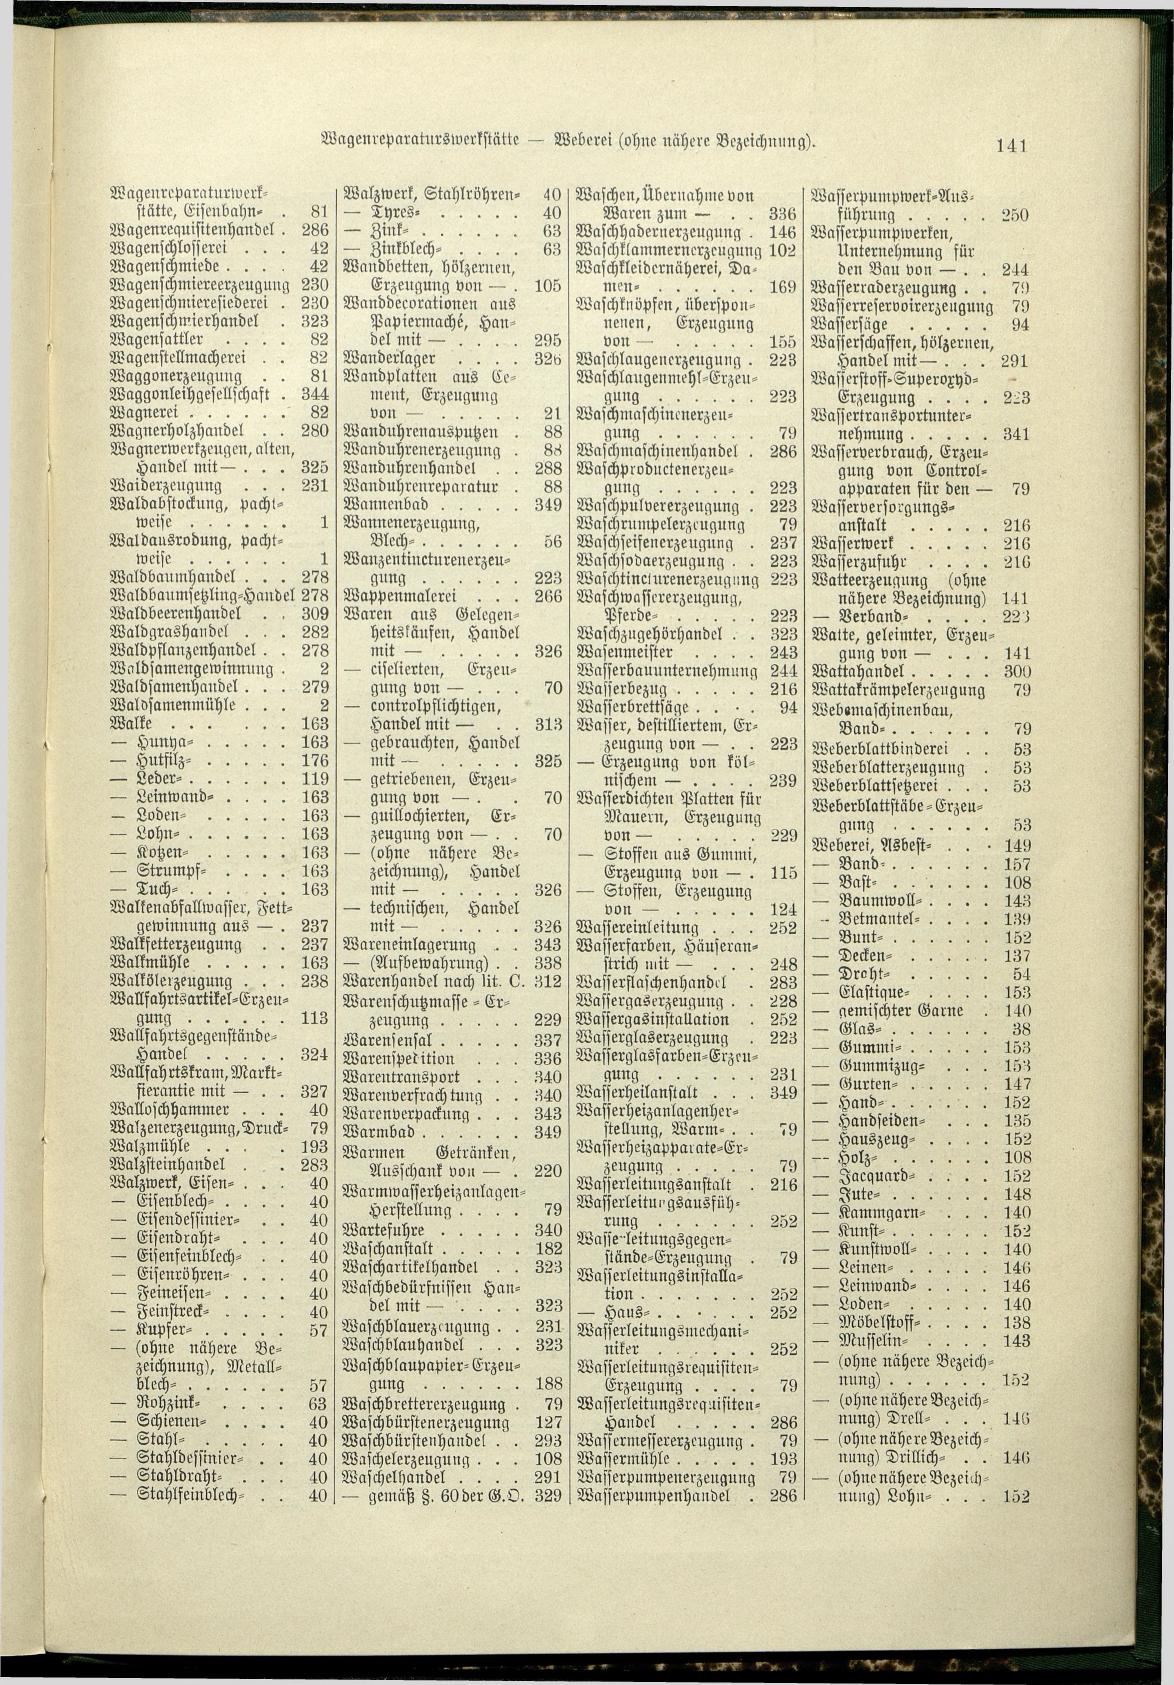 Verzeichnis der Gewerbe der im Reichsrathe vertretenen Königreiche und Länder 1900 - Seite 145